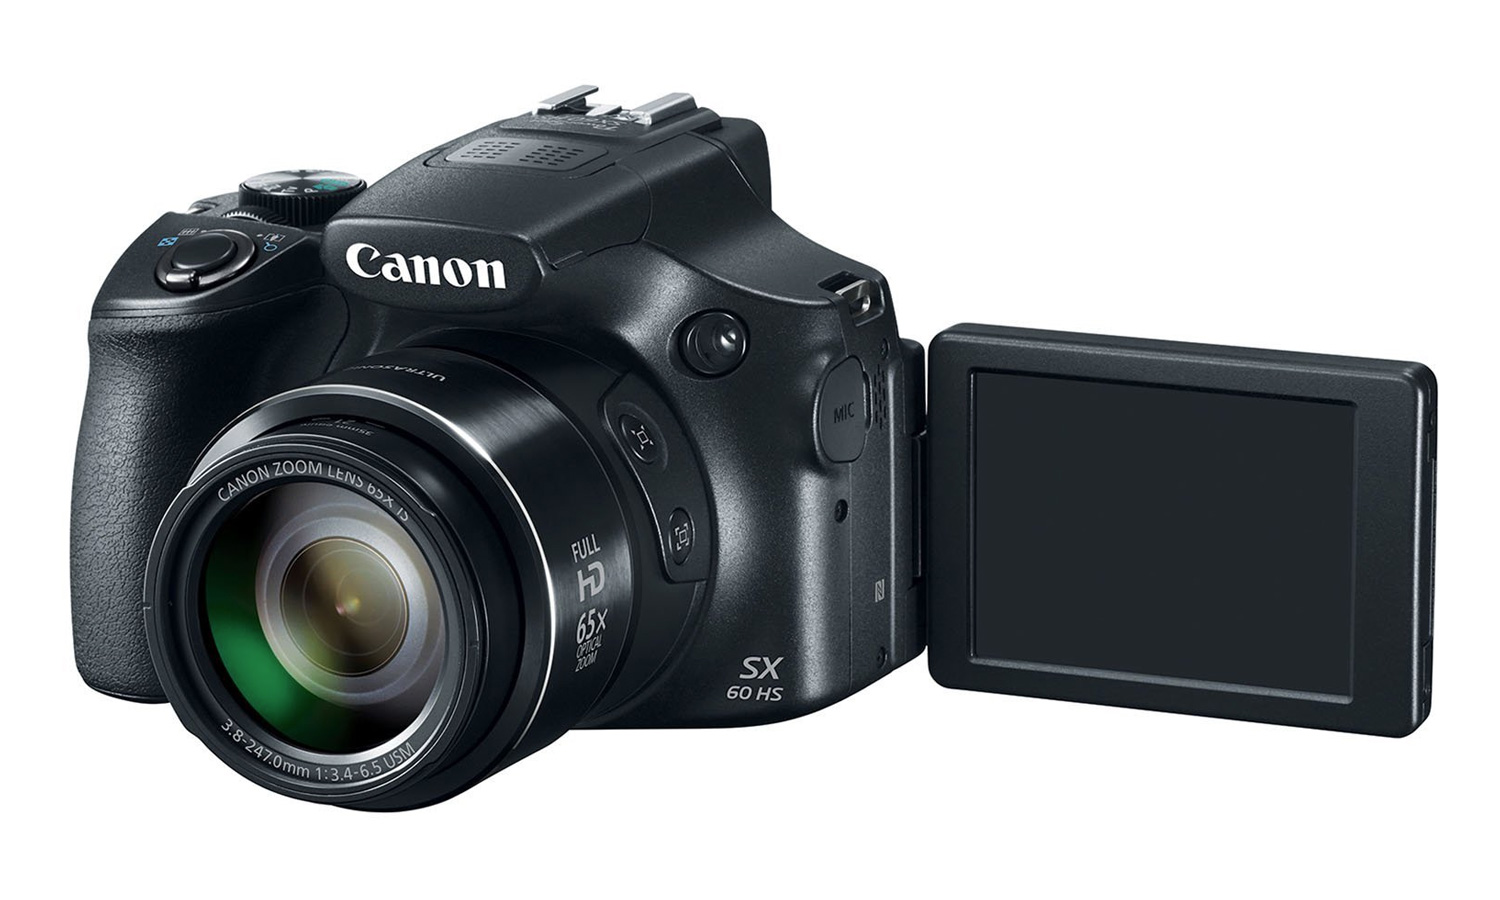 カメラ デジタルカメラ Canon PowerShot SX60 HS Review: One Amazing Ultrazoom | Tom's Guide